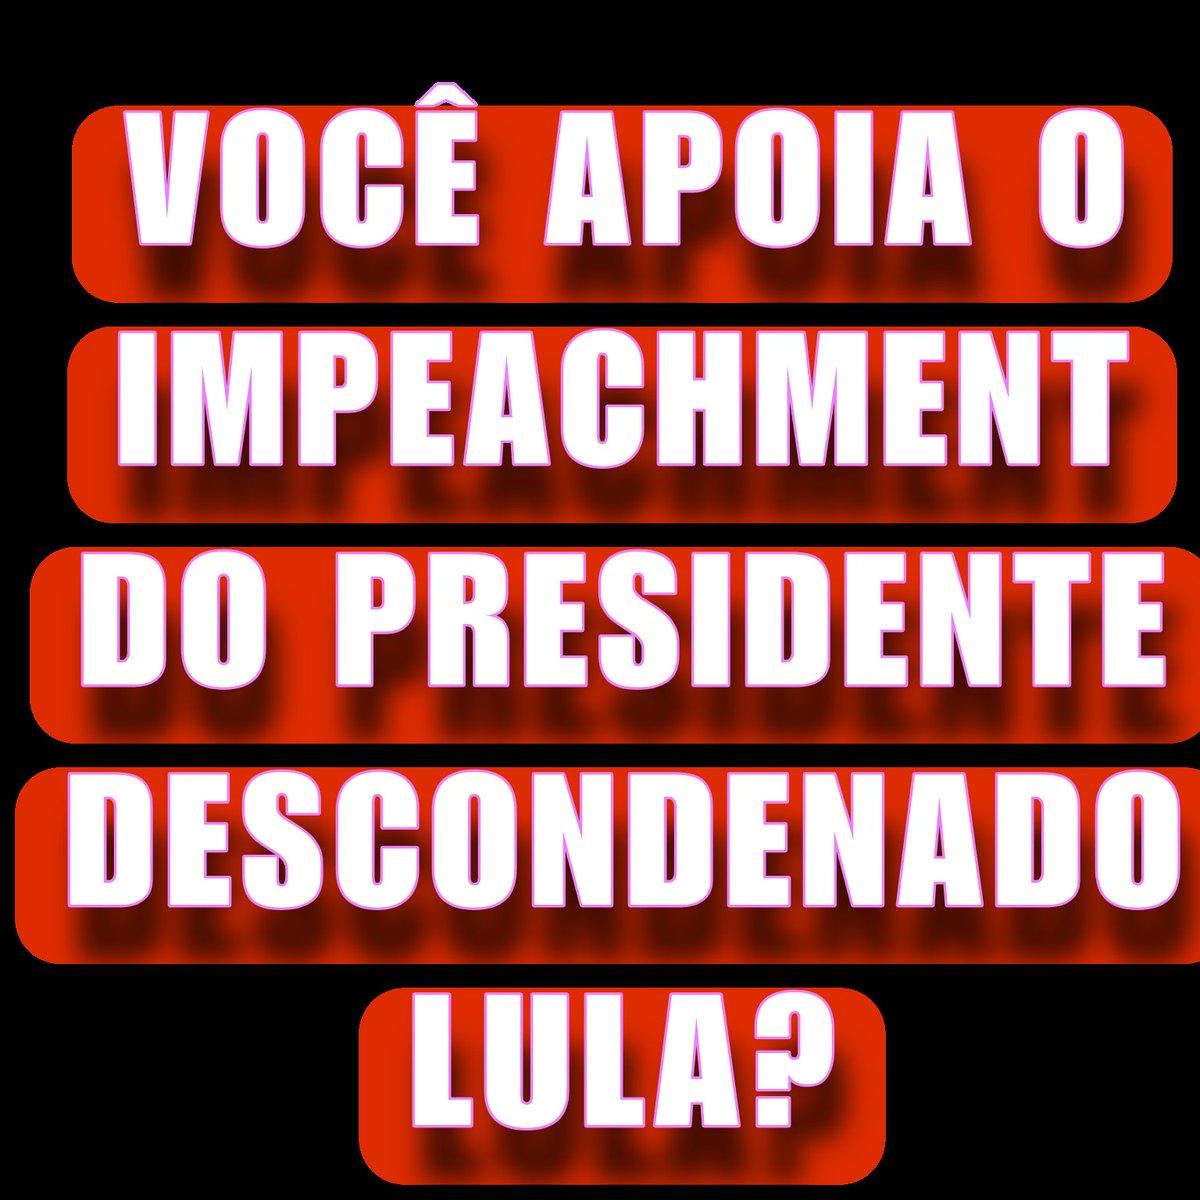 Você apoia o IMPEACHMENT do Presidente descondenado Lula?